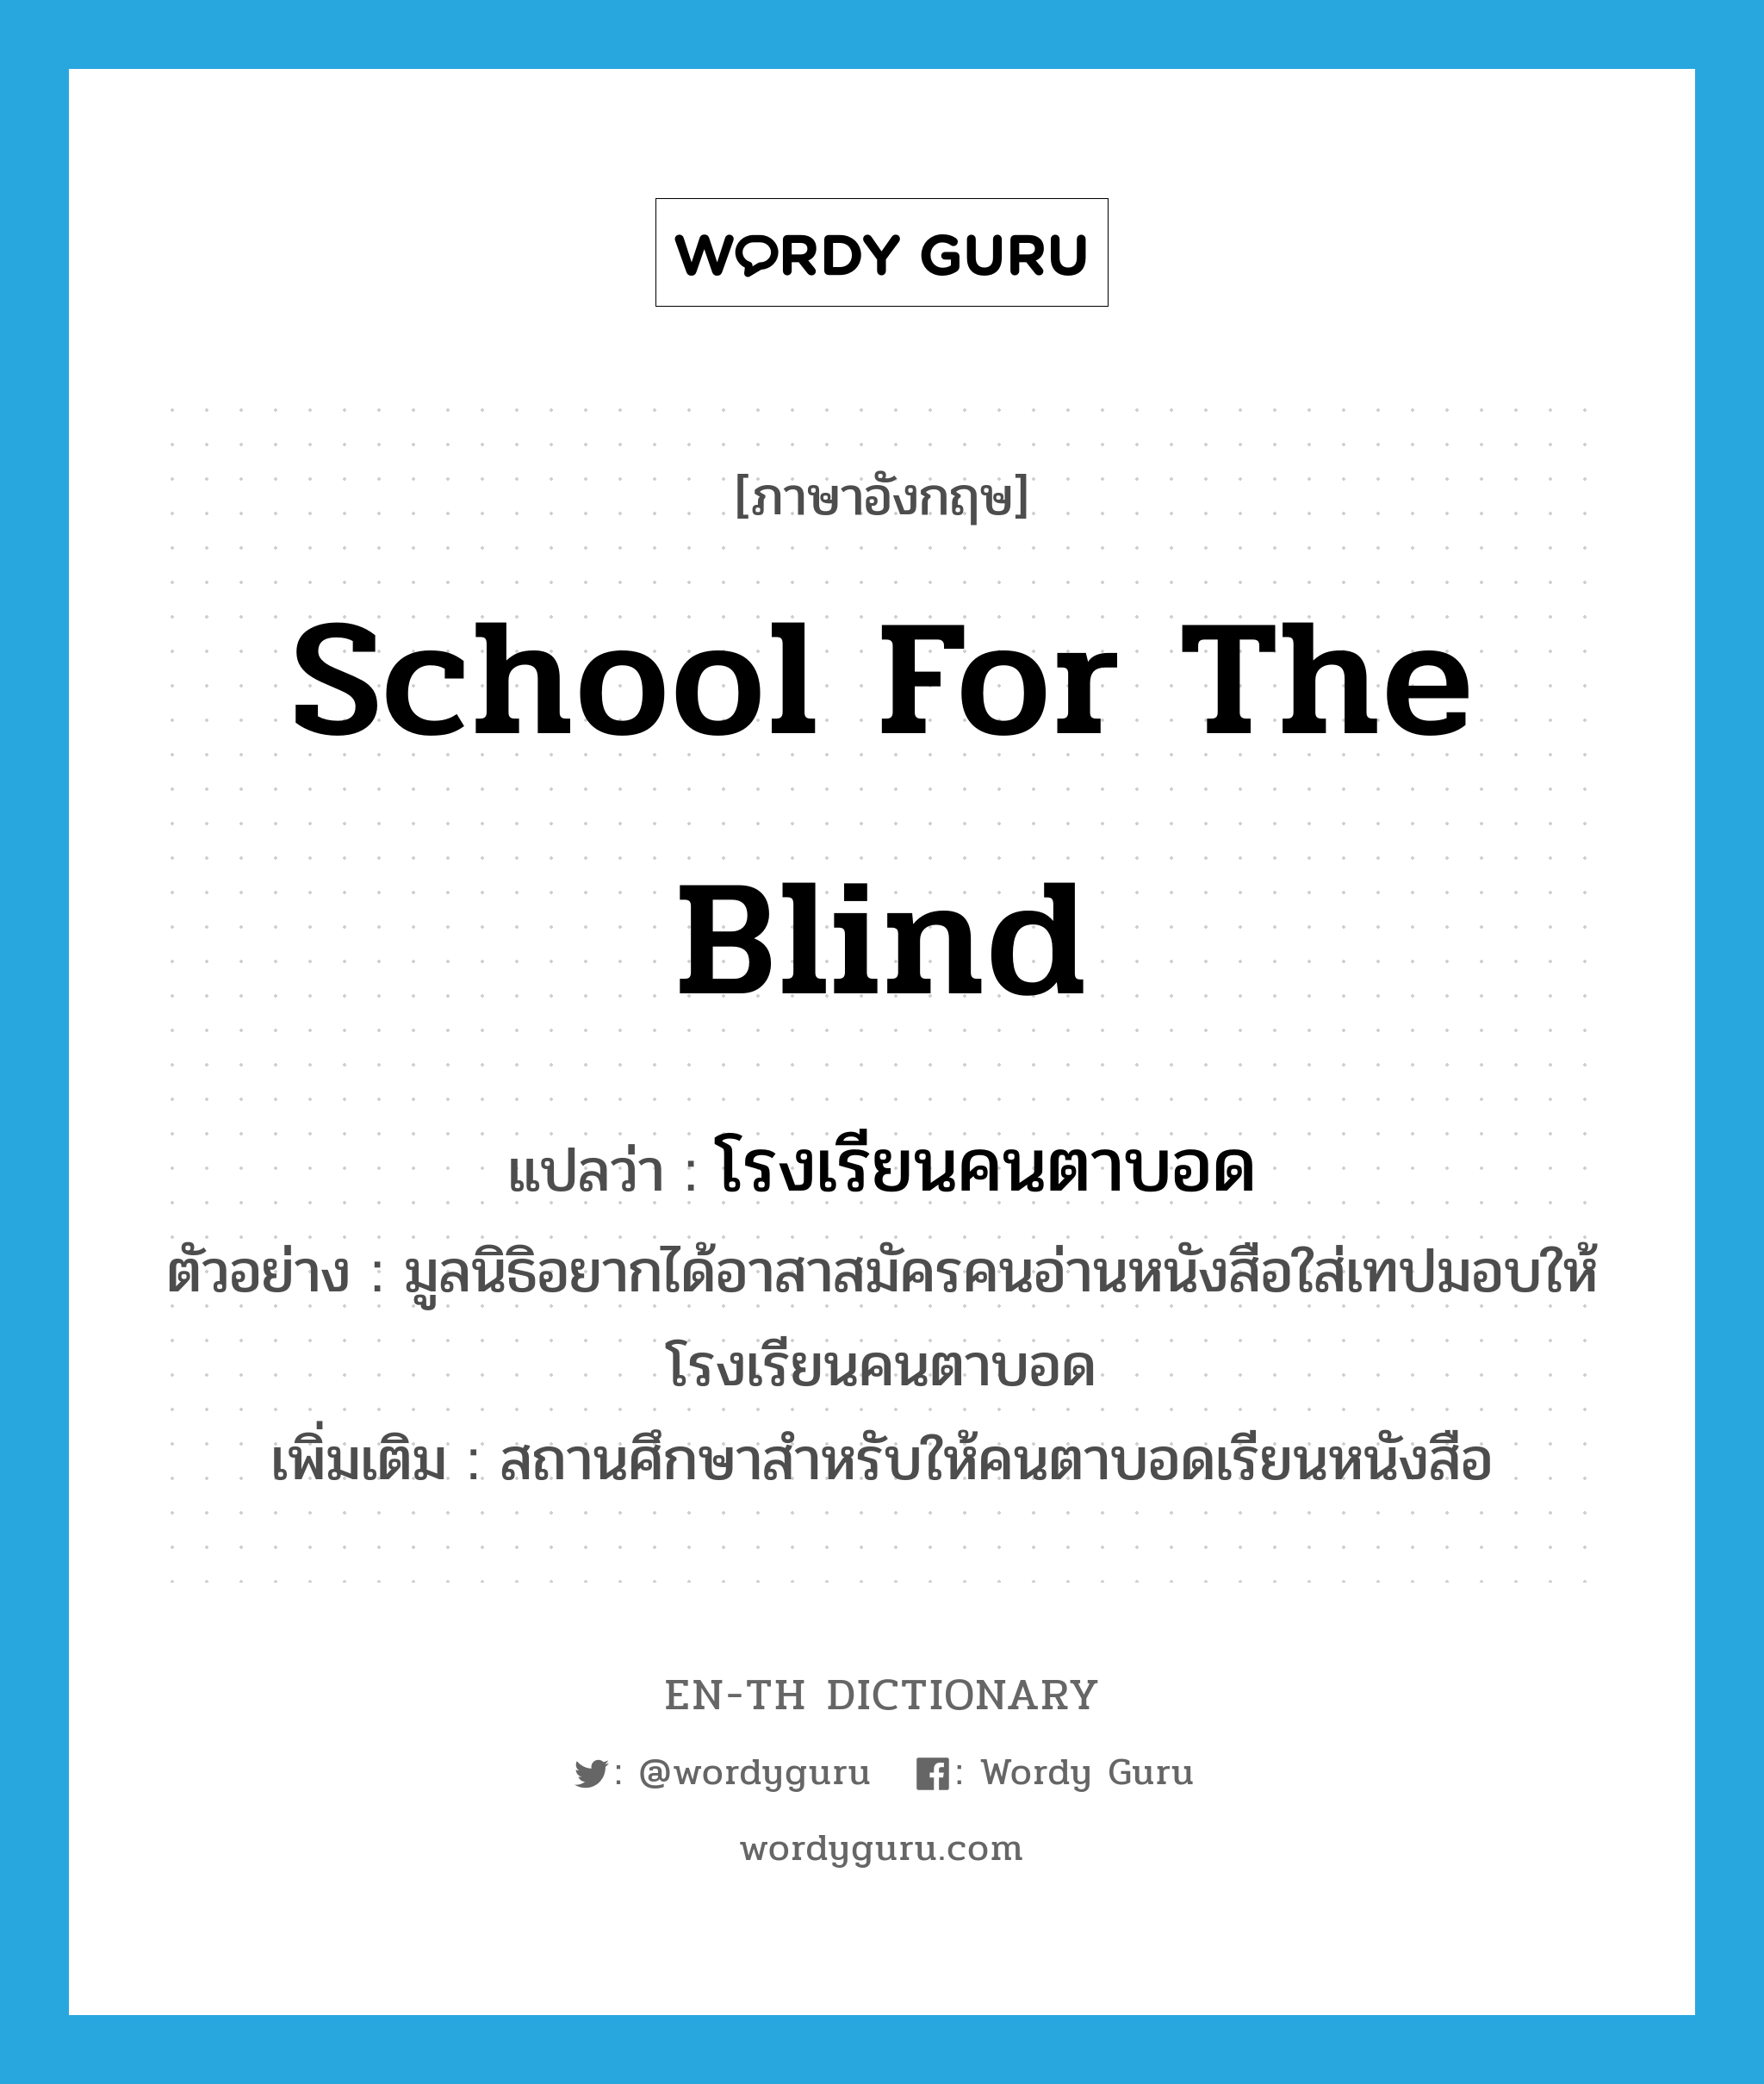 school for the blind แปลว่า?, คำศัพท์ภาษาอังกฤษ school for the blind แปลว่า โรงเรียนคนตาบอด ประเภท N ตัวอย่าง มูลนิธิอยากได้อาสาสมัครคนอ่านหนังสือใส่เทปมอบให้โรงเรียนคนตาบอด เพิ่มเติม สถานศึกษาสำหรับให้คนตาบอดเรียนหนังสือ หมวด N